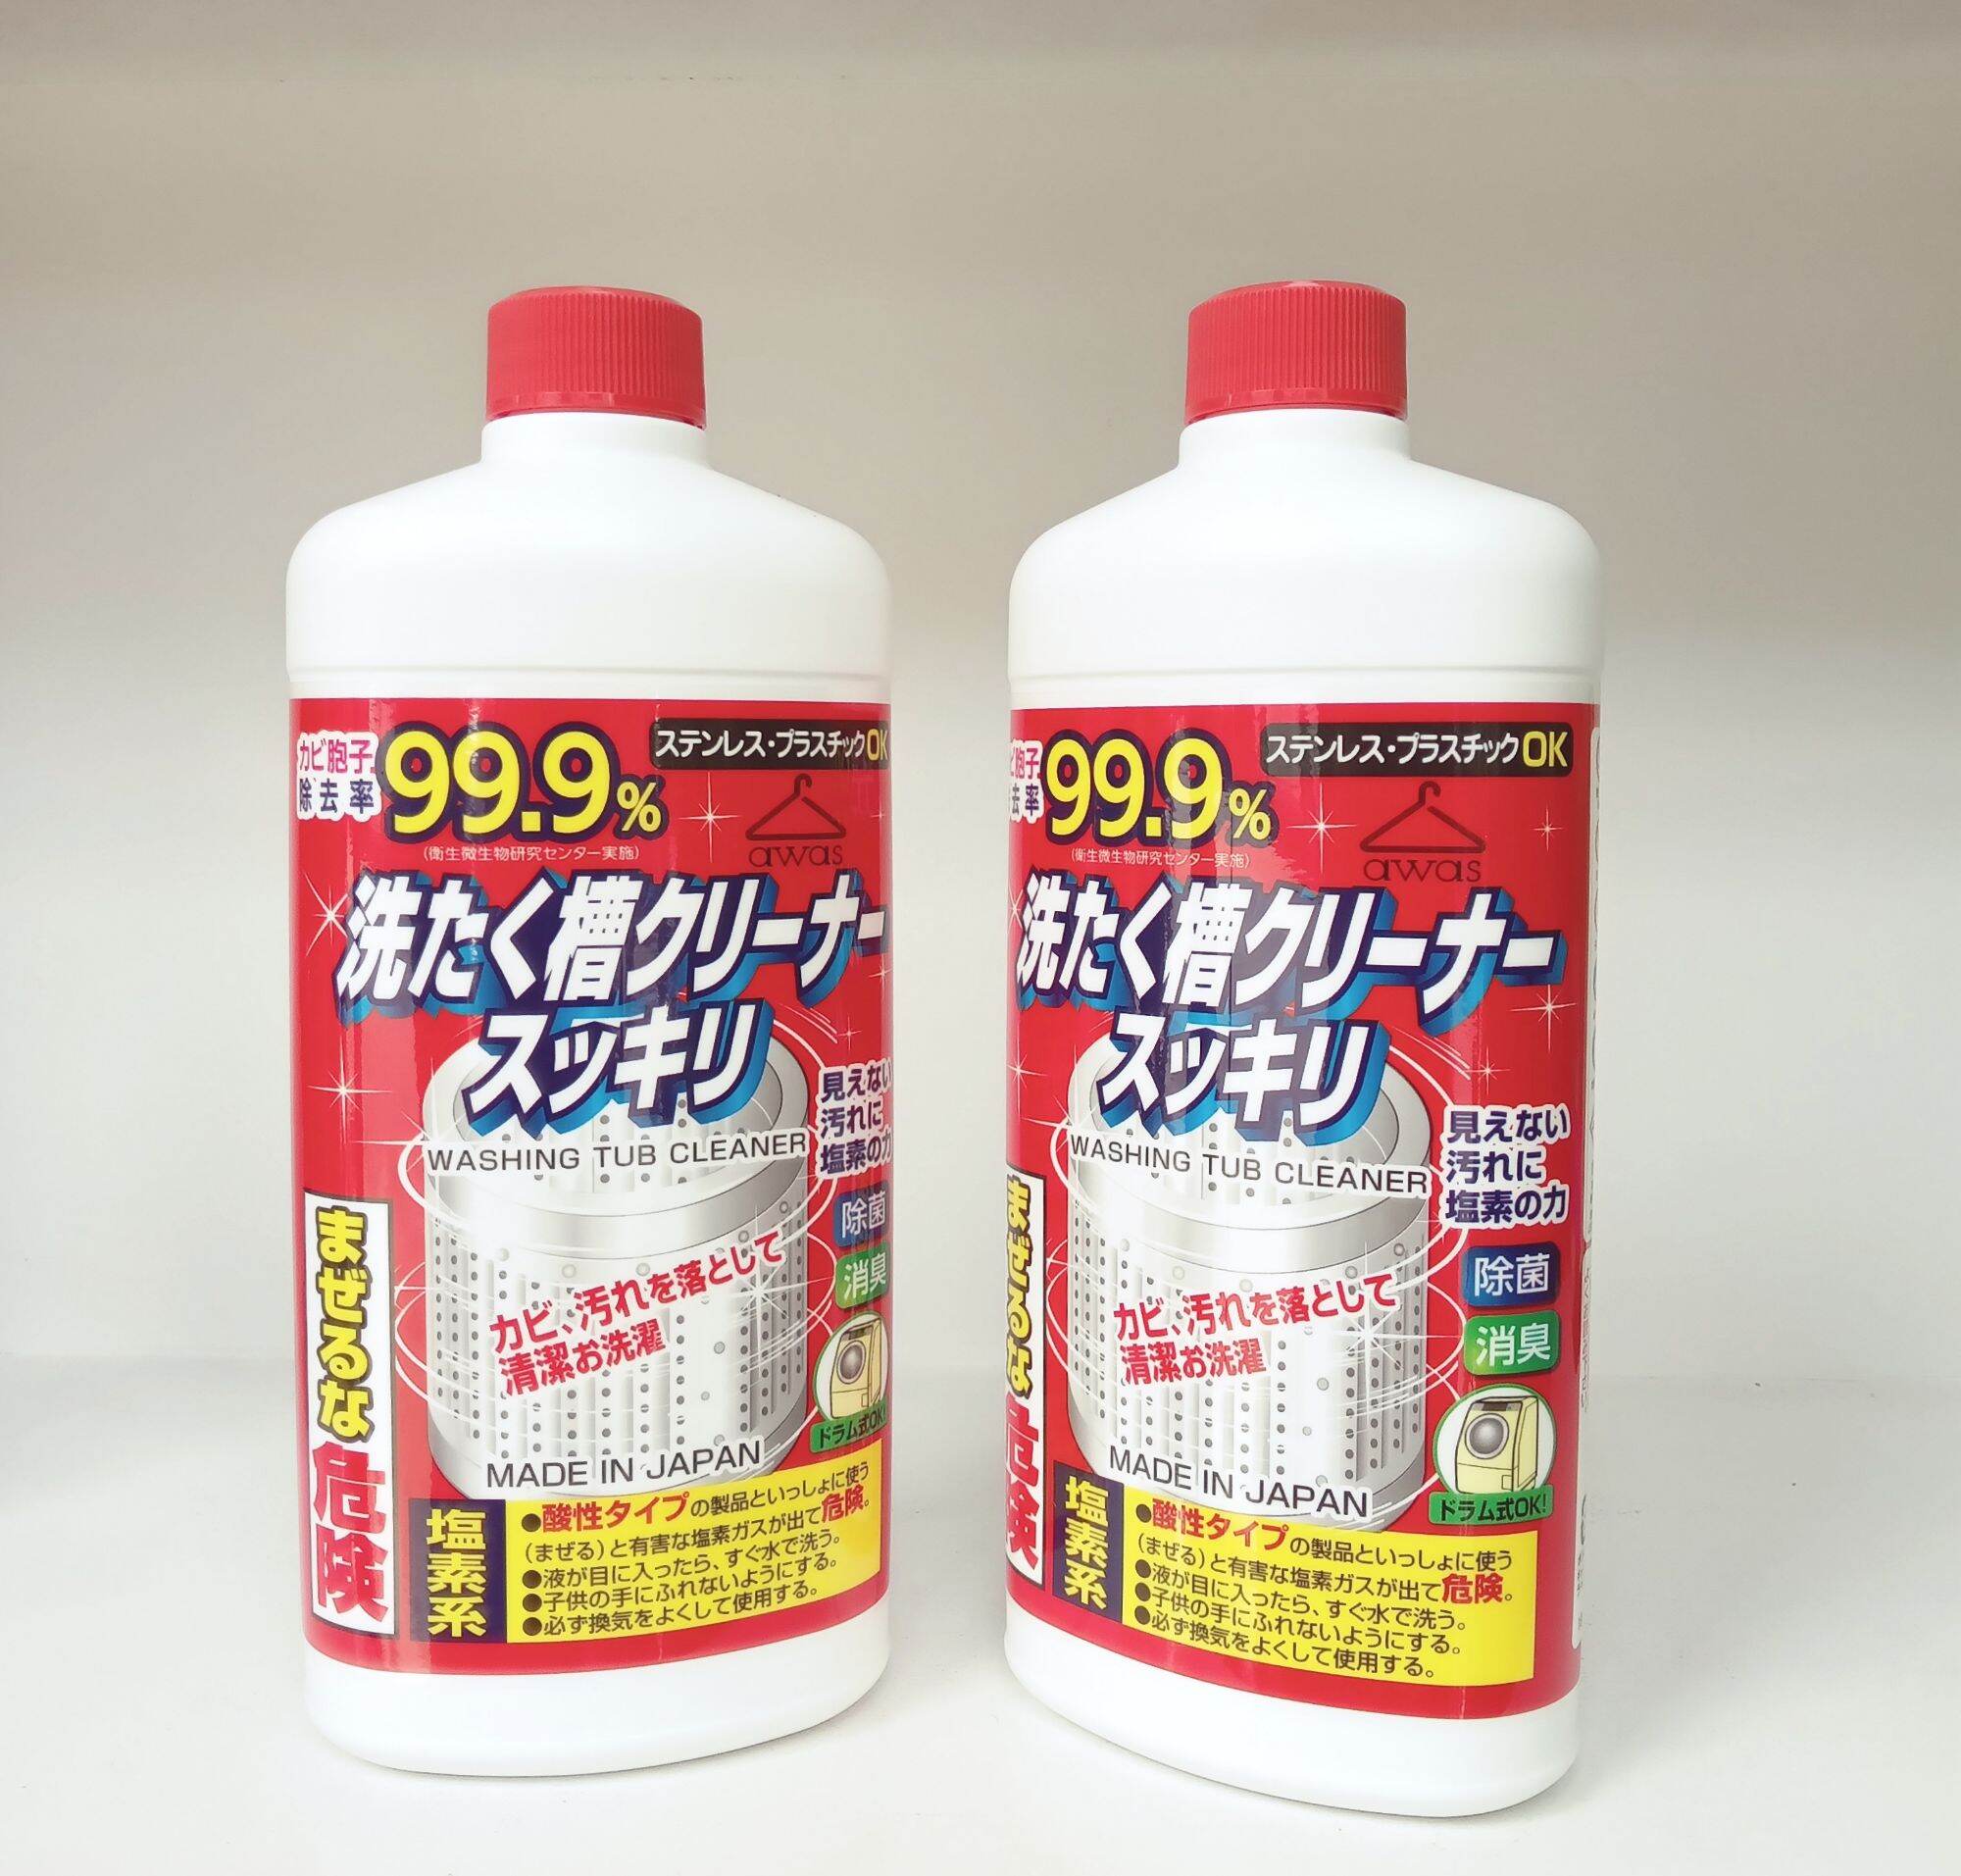 Nước tẩy vệ sinh lồng giặt Rocket Nhật Bản làm sạch 99% 550g